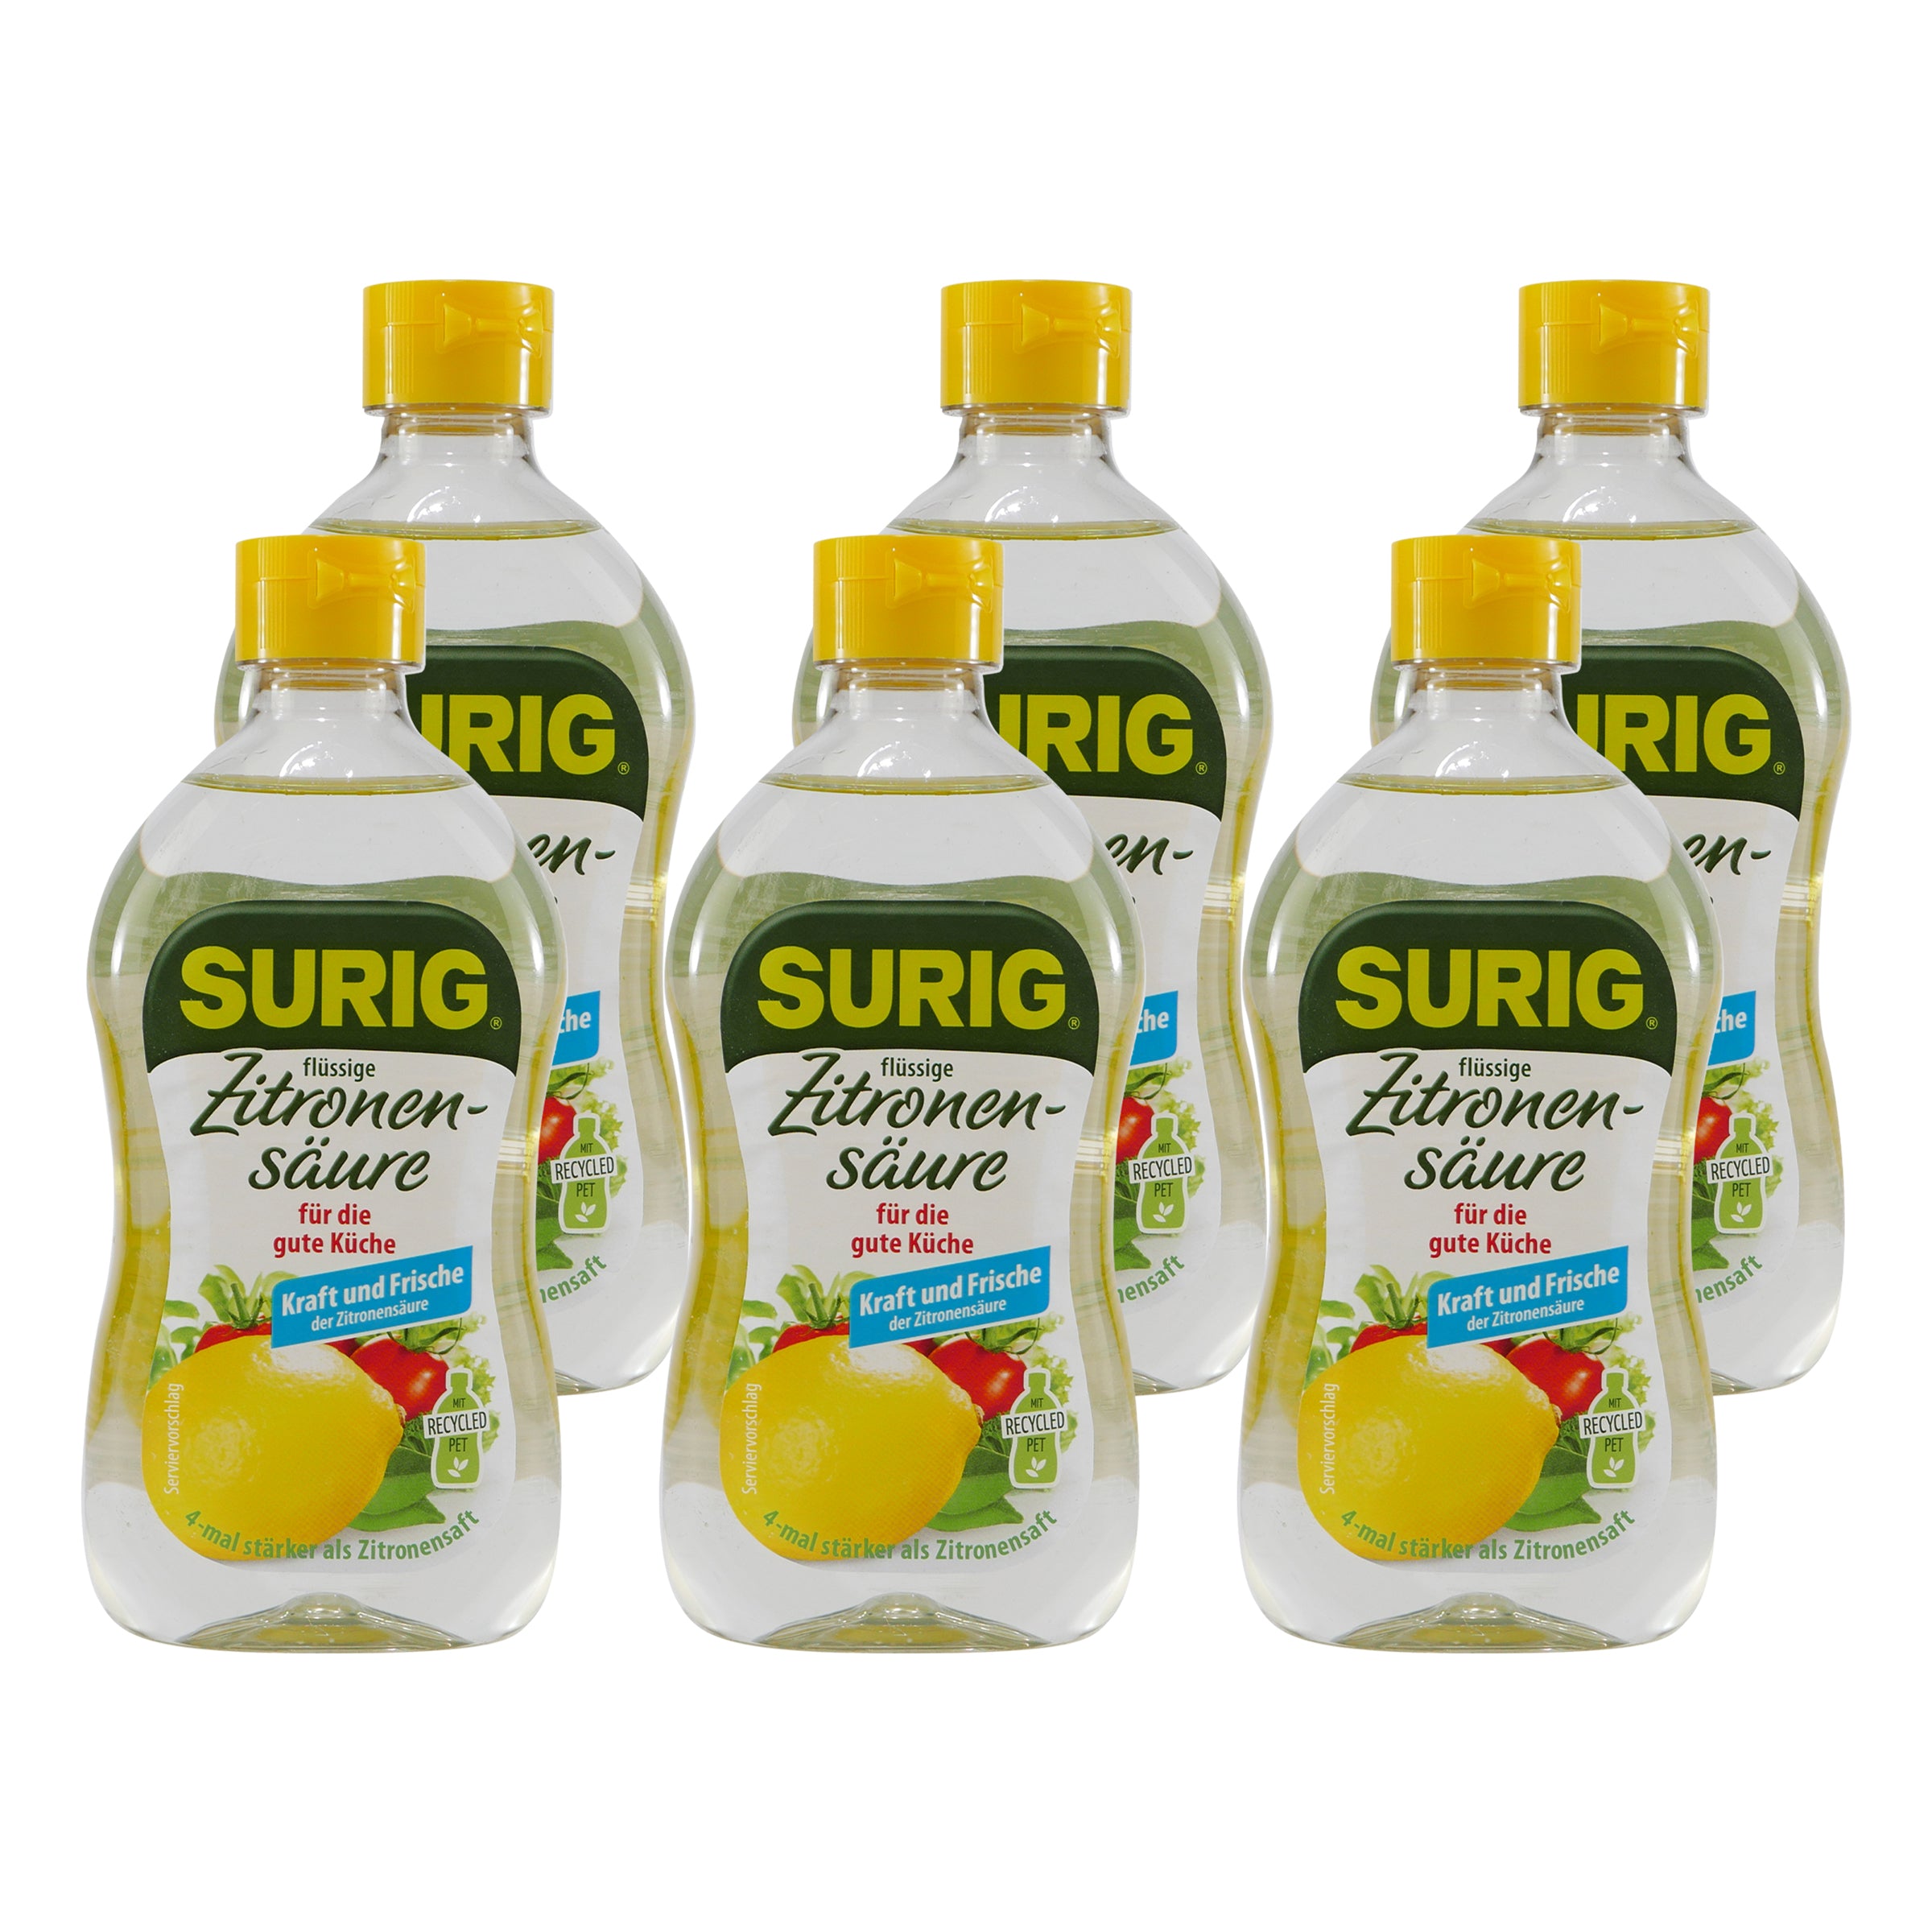 Surig Zitronen-Säure (12 x 390ml)